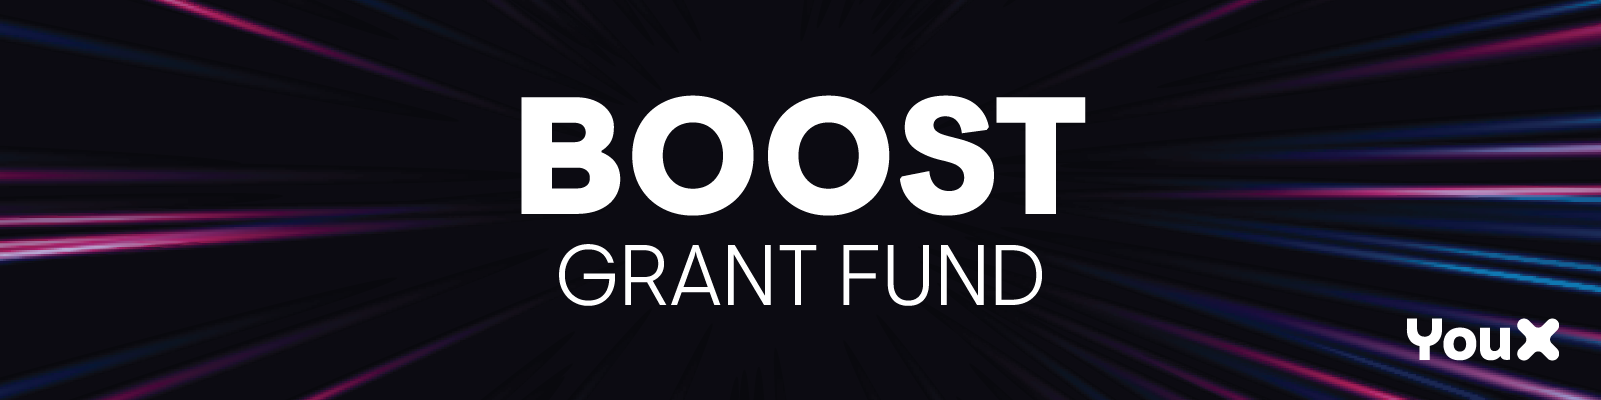 Boost Grant Fund